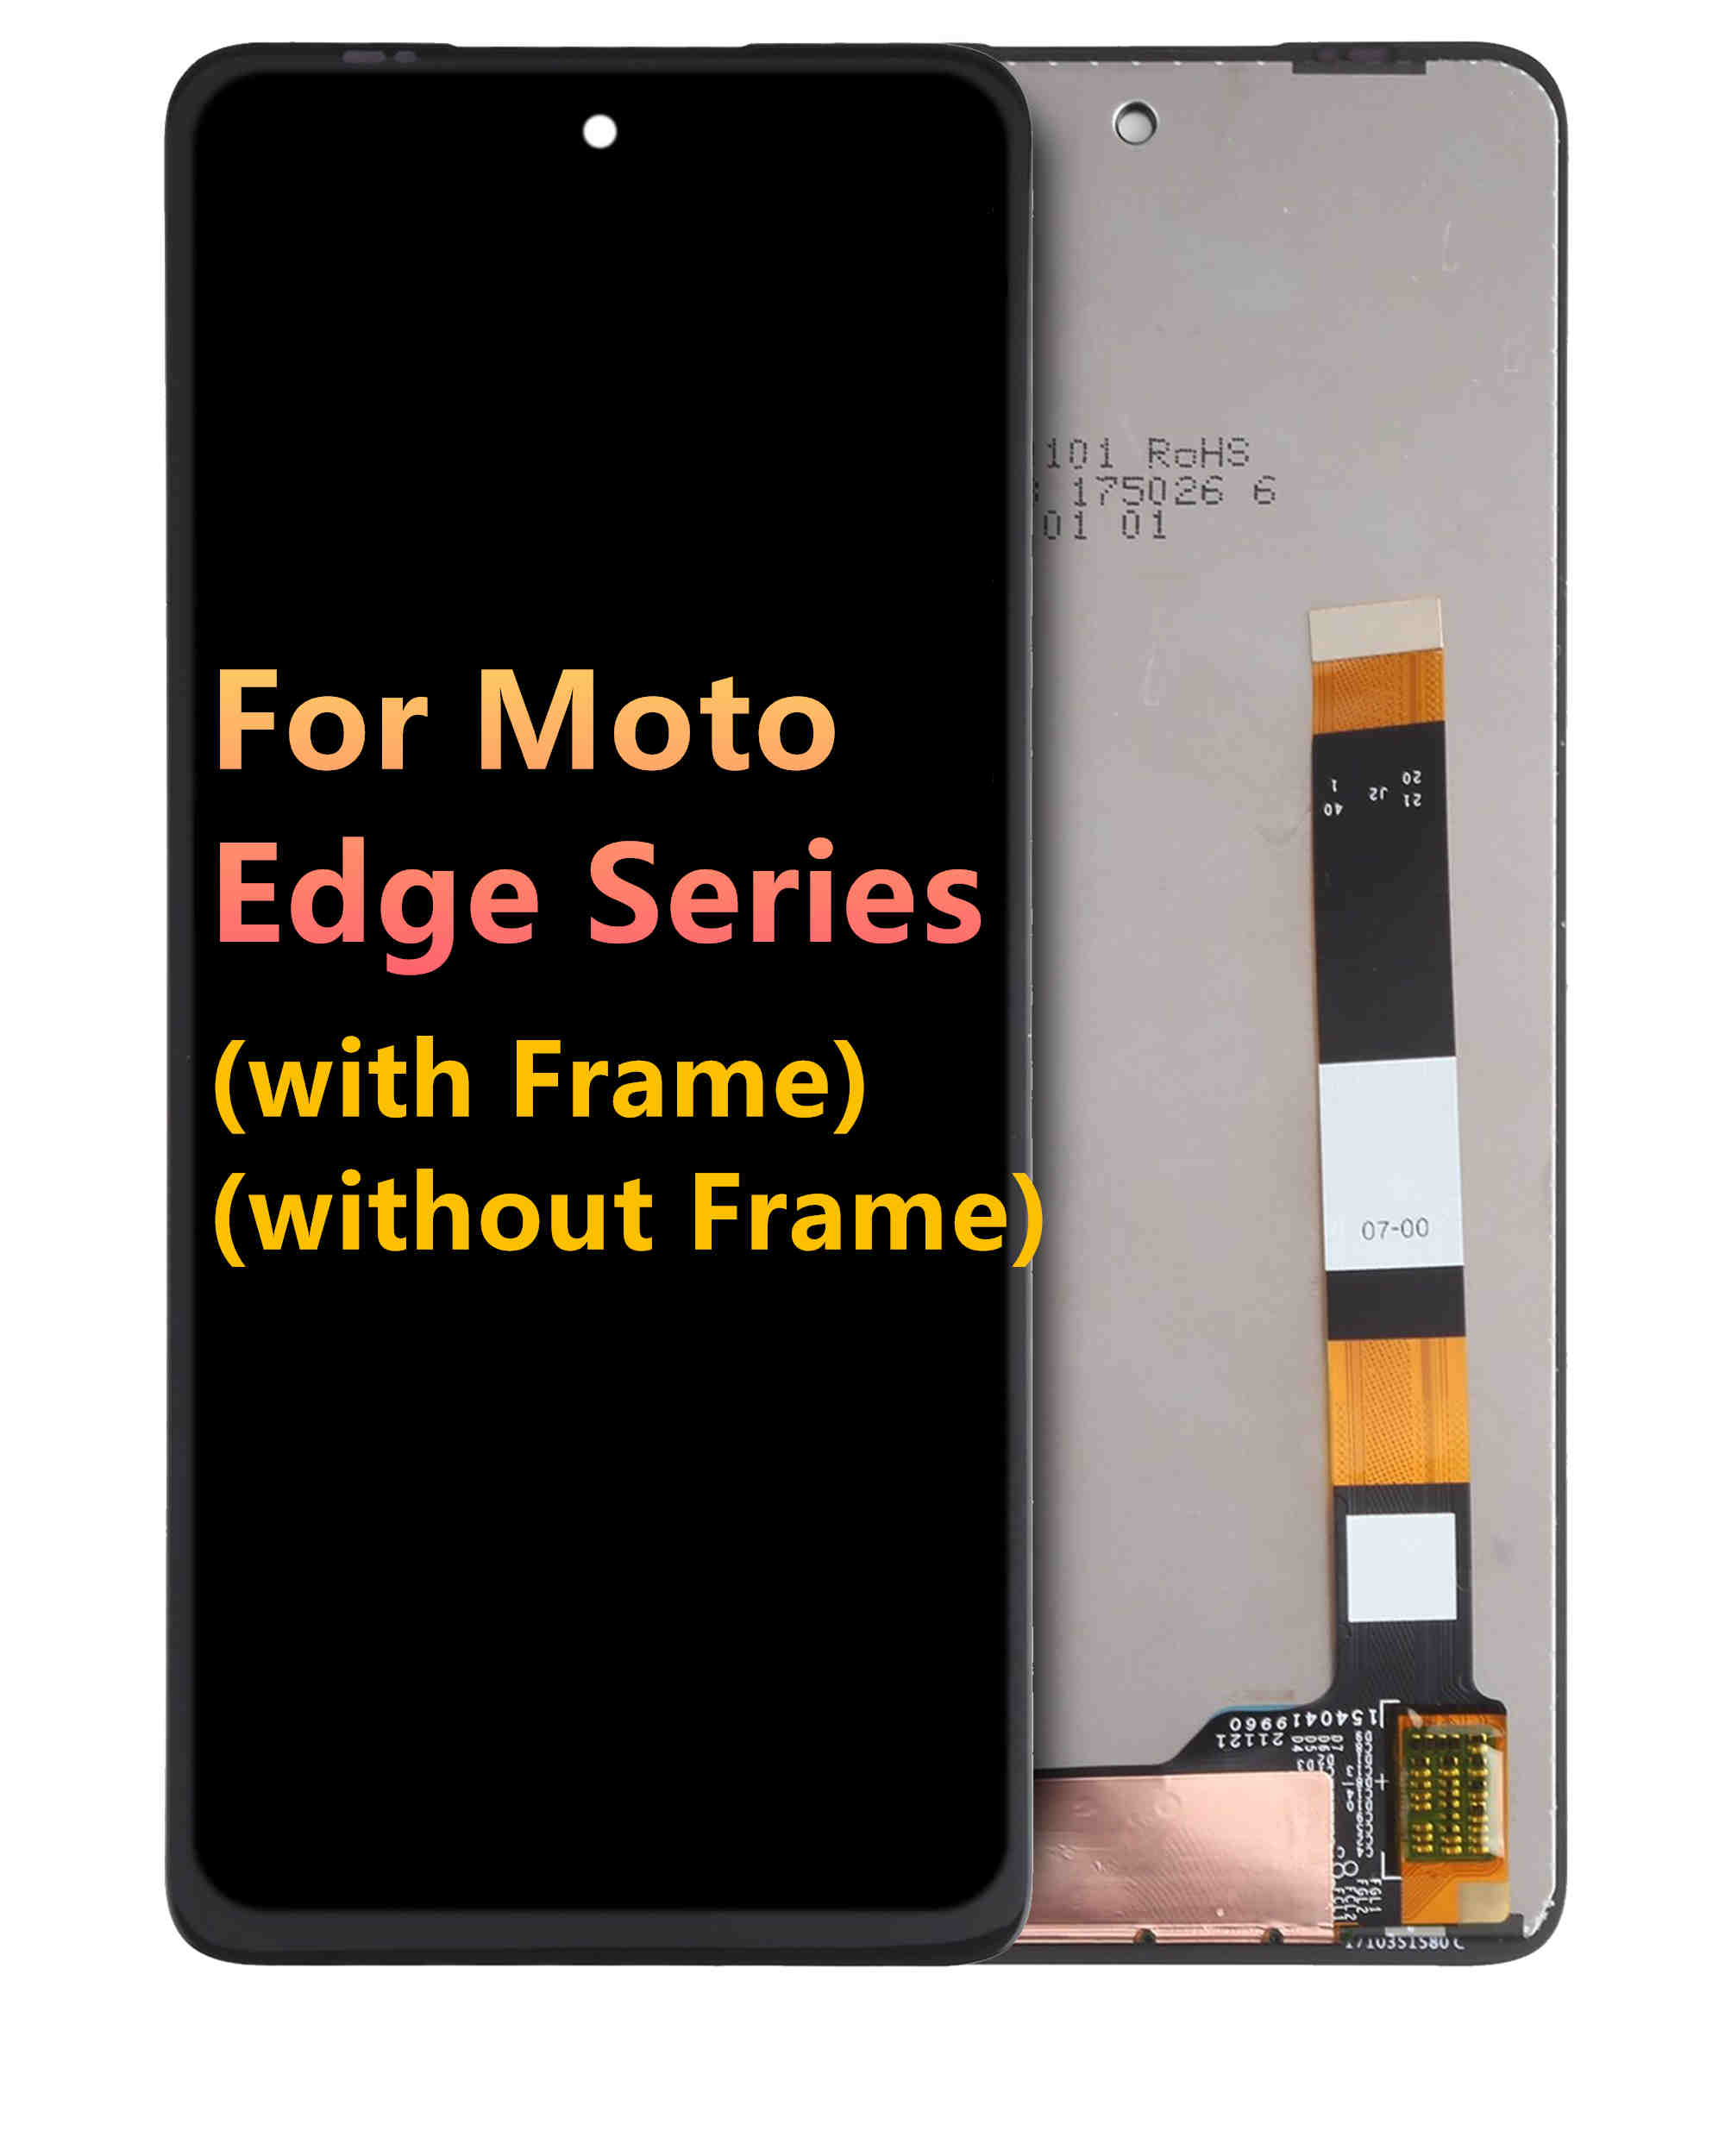 मोटोरोला मोटो एज श्रृंखला को लागी LCD विधानसभा